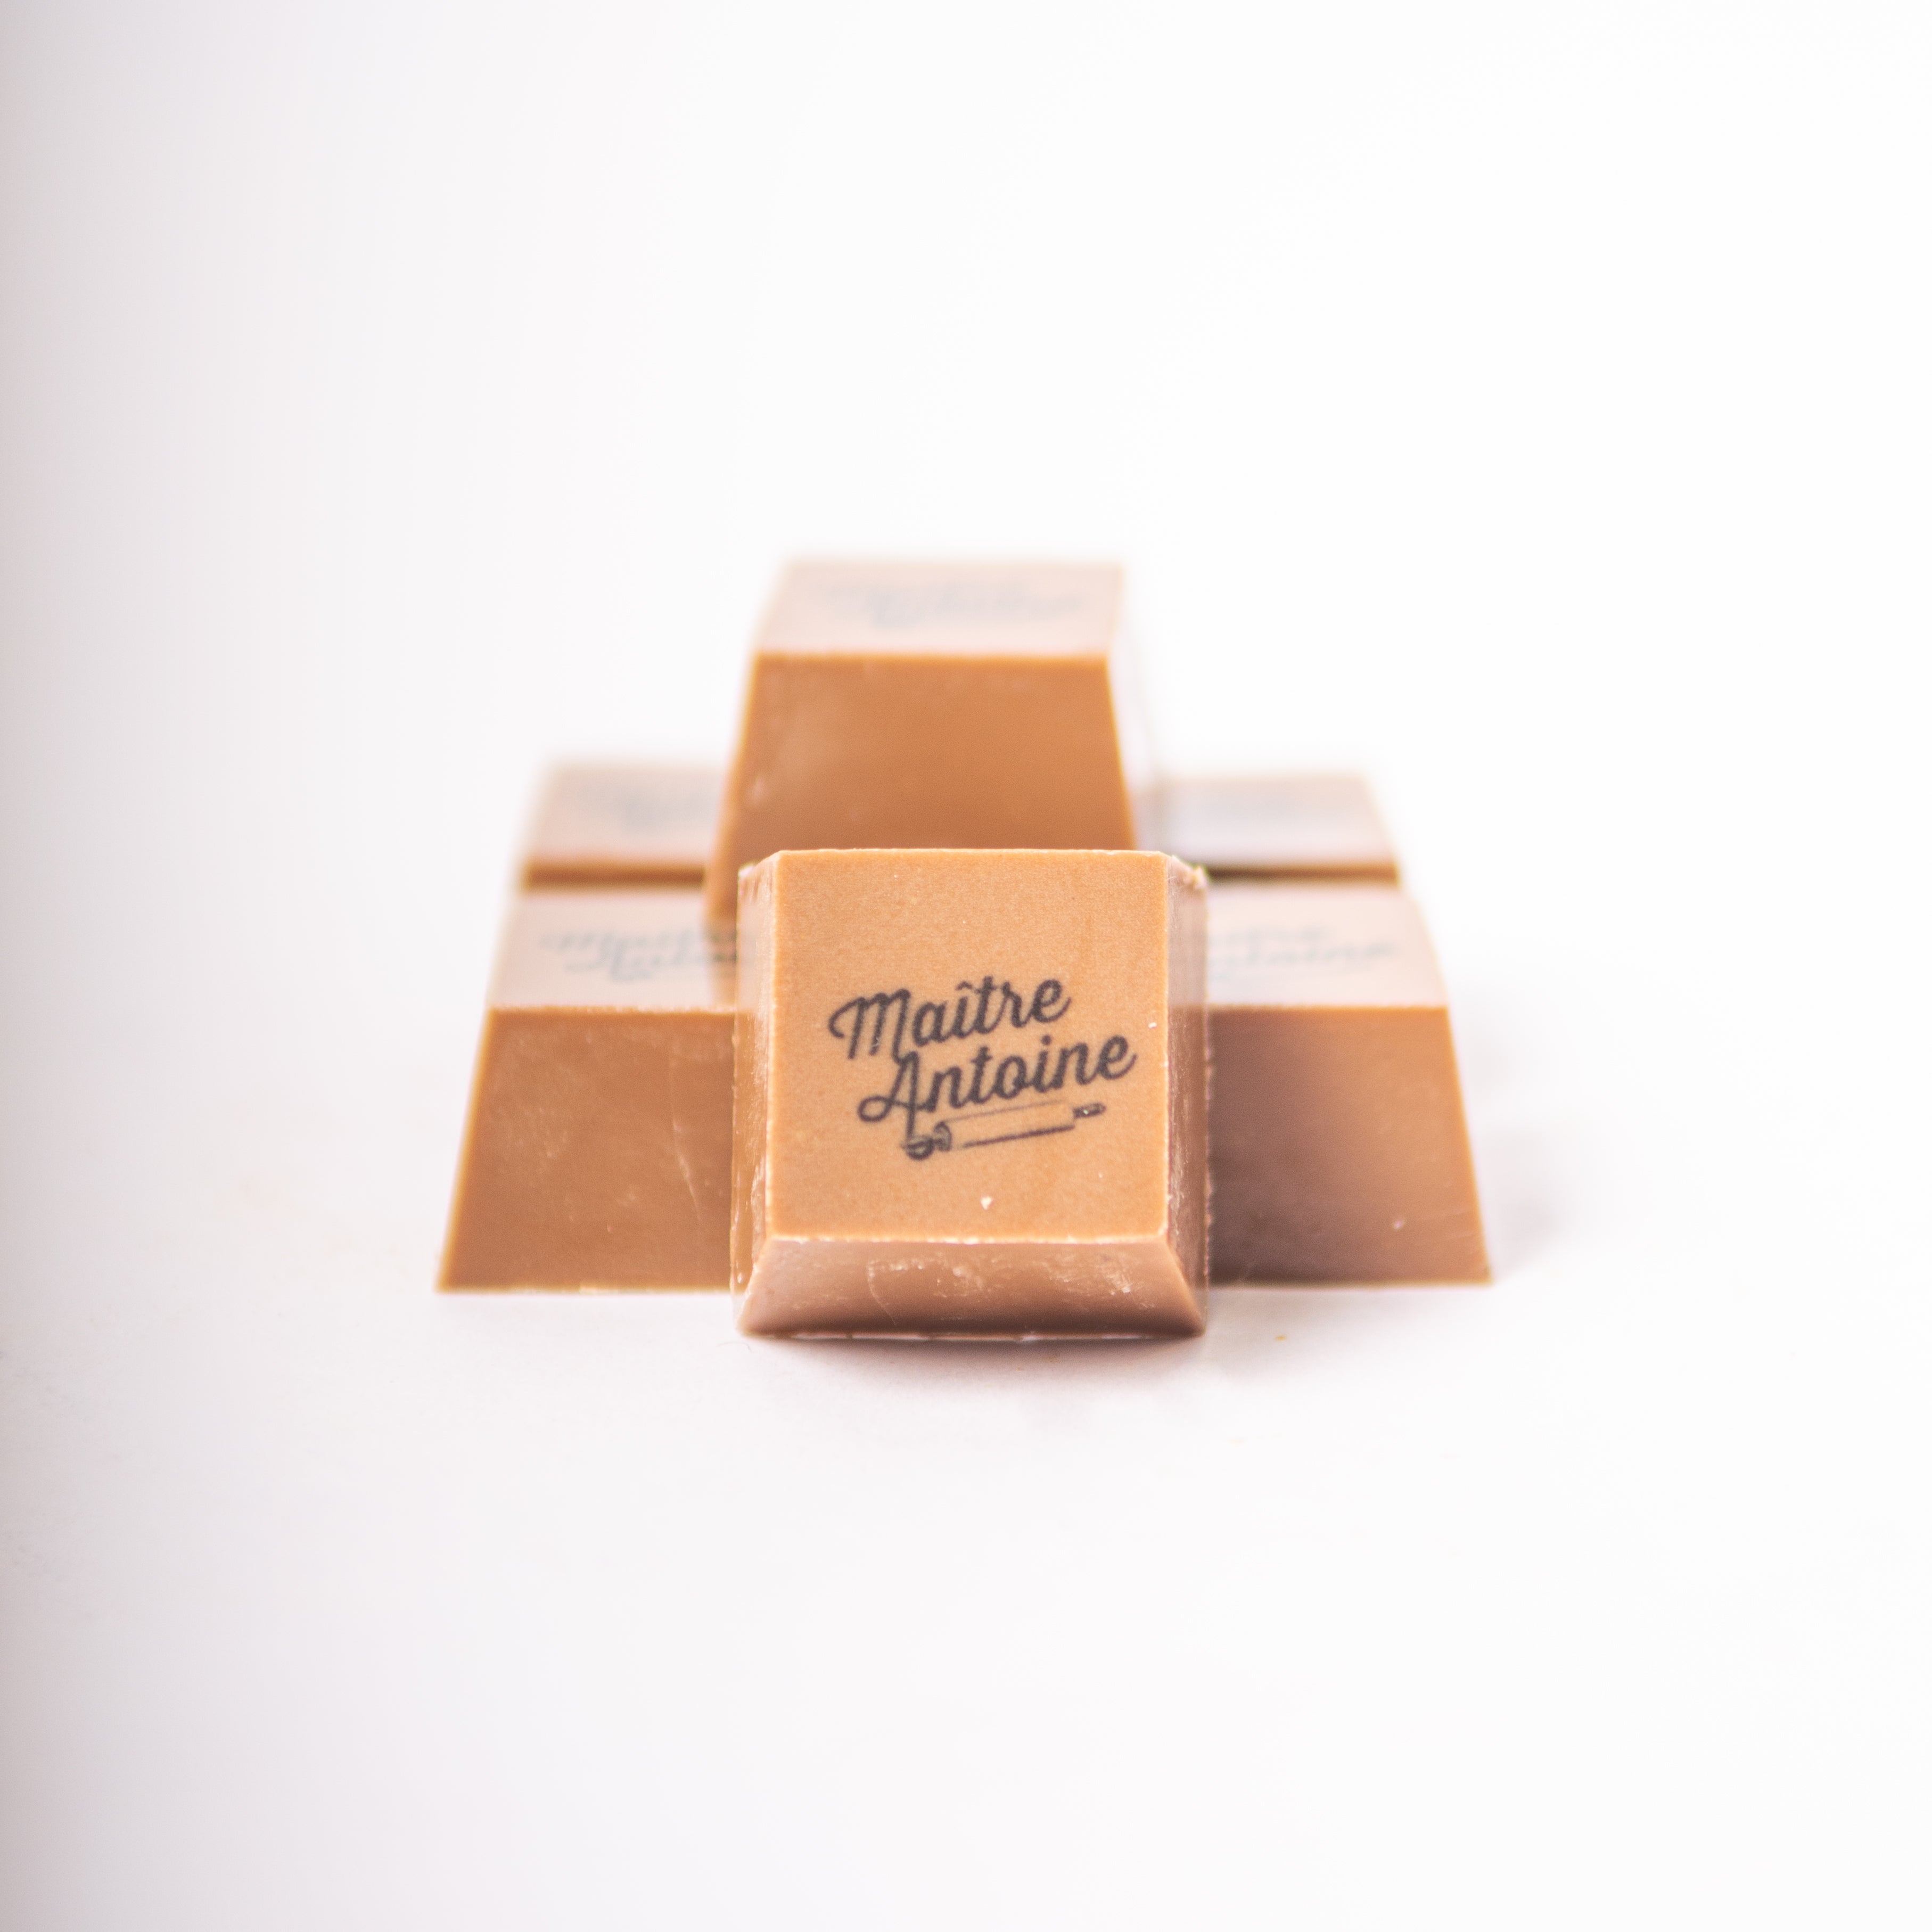 VOORDEEL PACK logo pralines melk chocolade - 846 stuks (= 3x doos van 282 stuks)